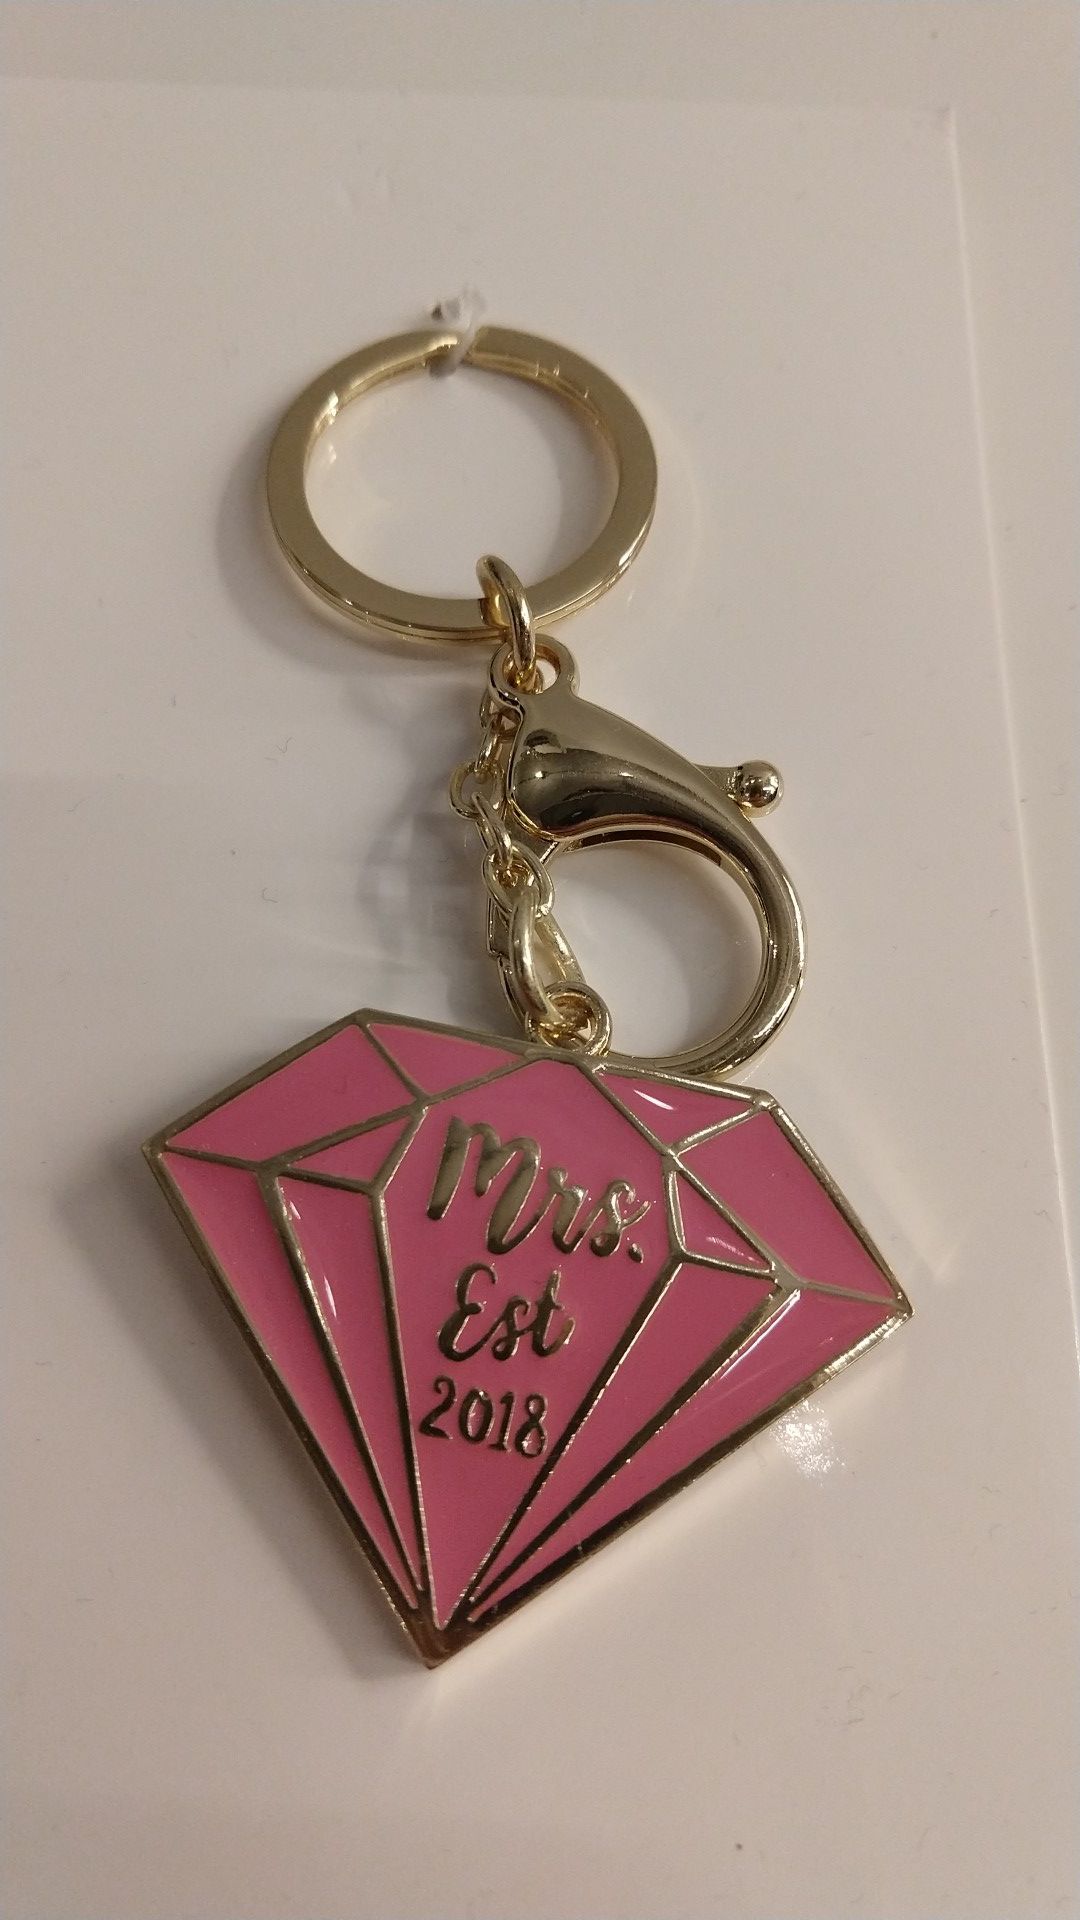 "Mrs. est. 2018" keychain